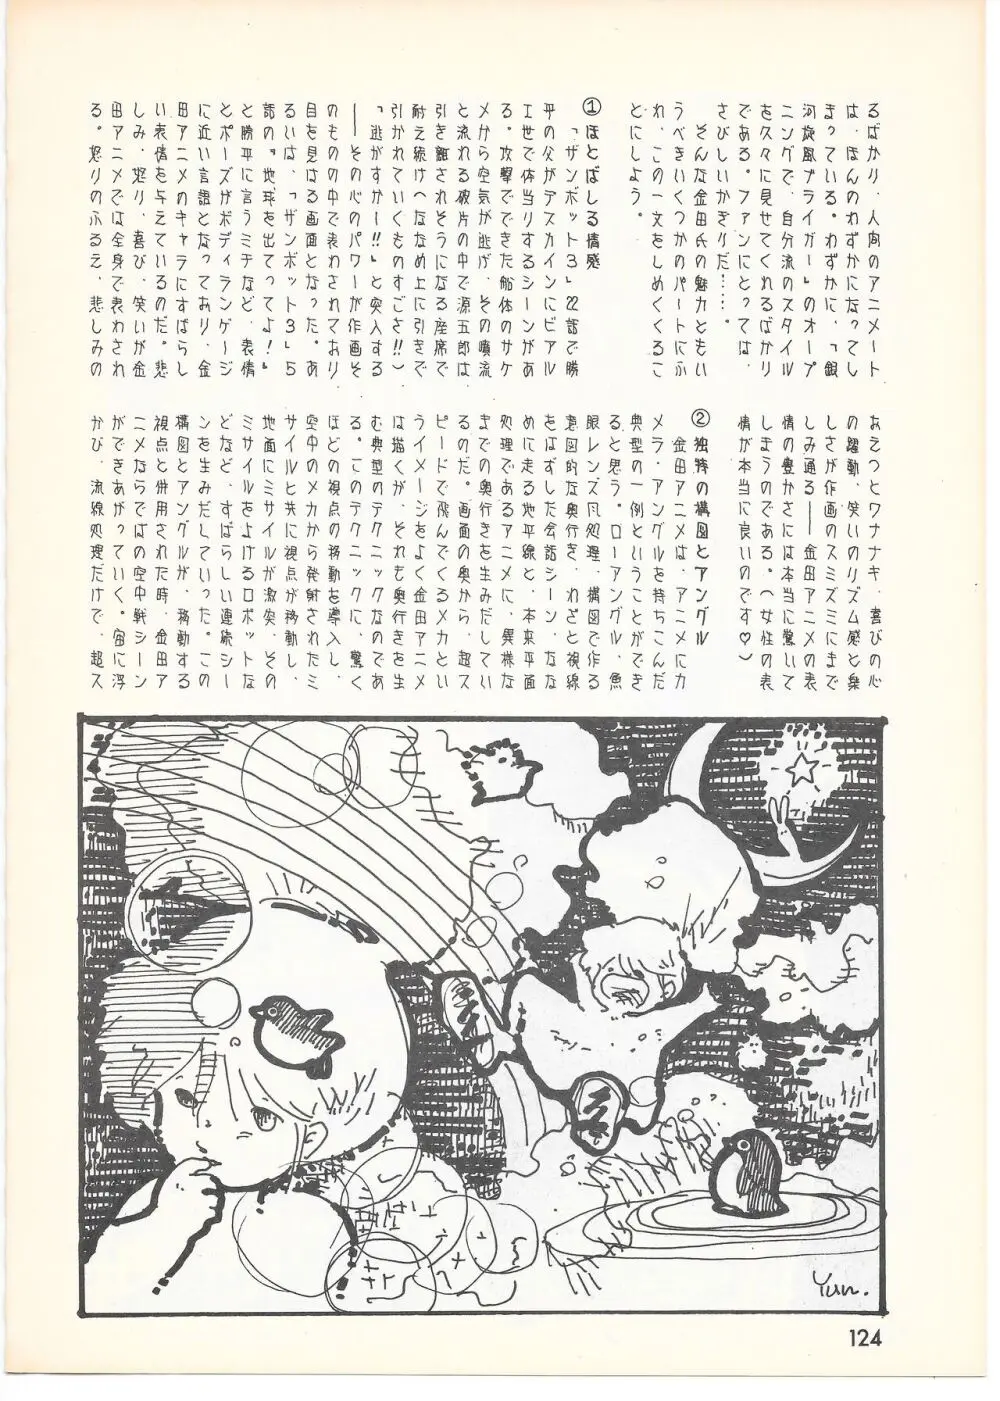 THE ANIMATOR 1 金田伊功特集号 119ページ